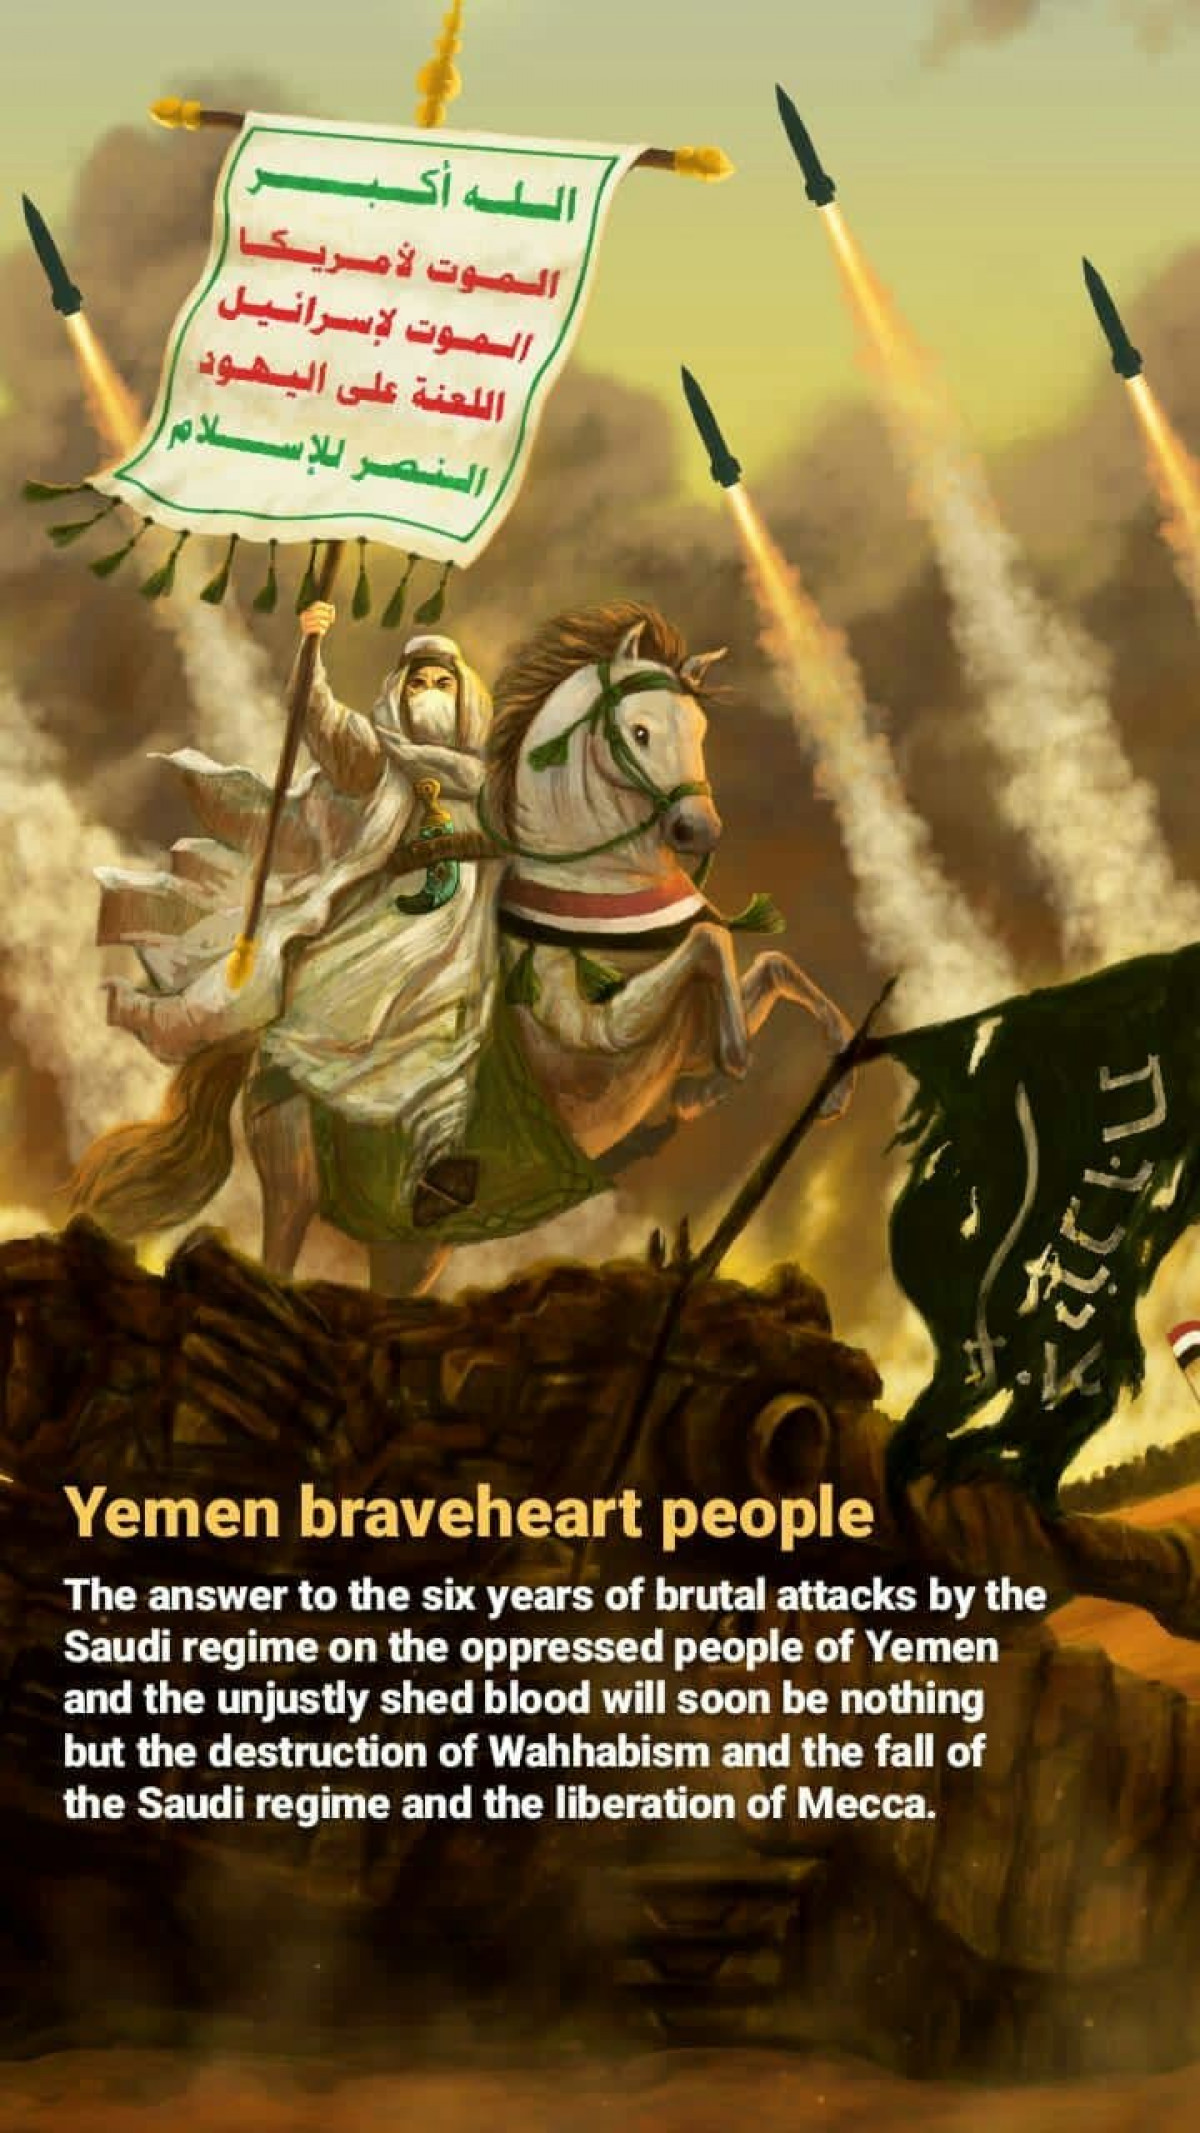 Yemen braveheart people